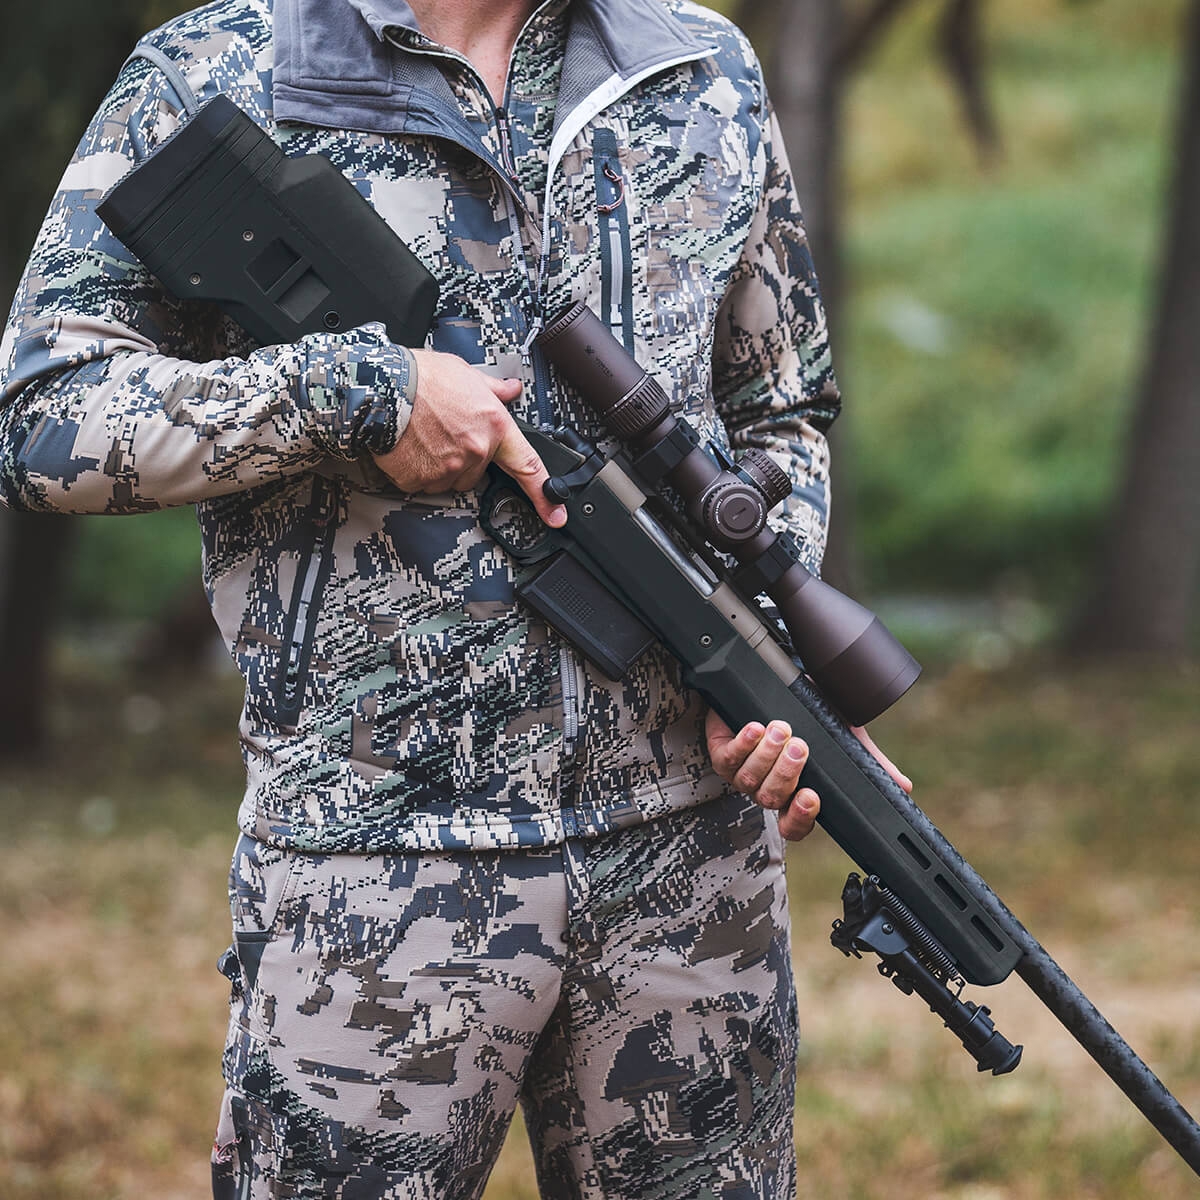 Hunter 700L Stock – Remington® 700 Long Action Black